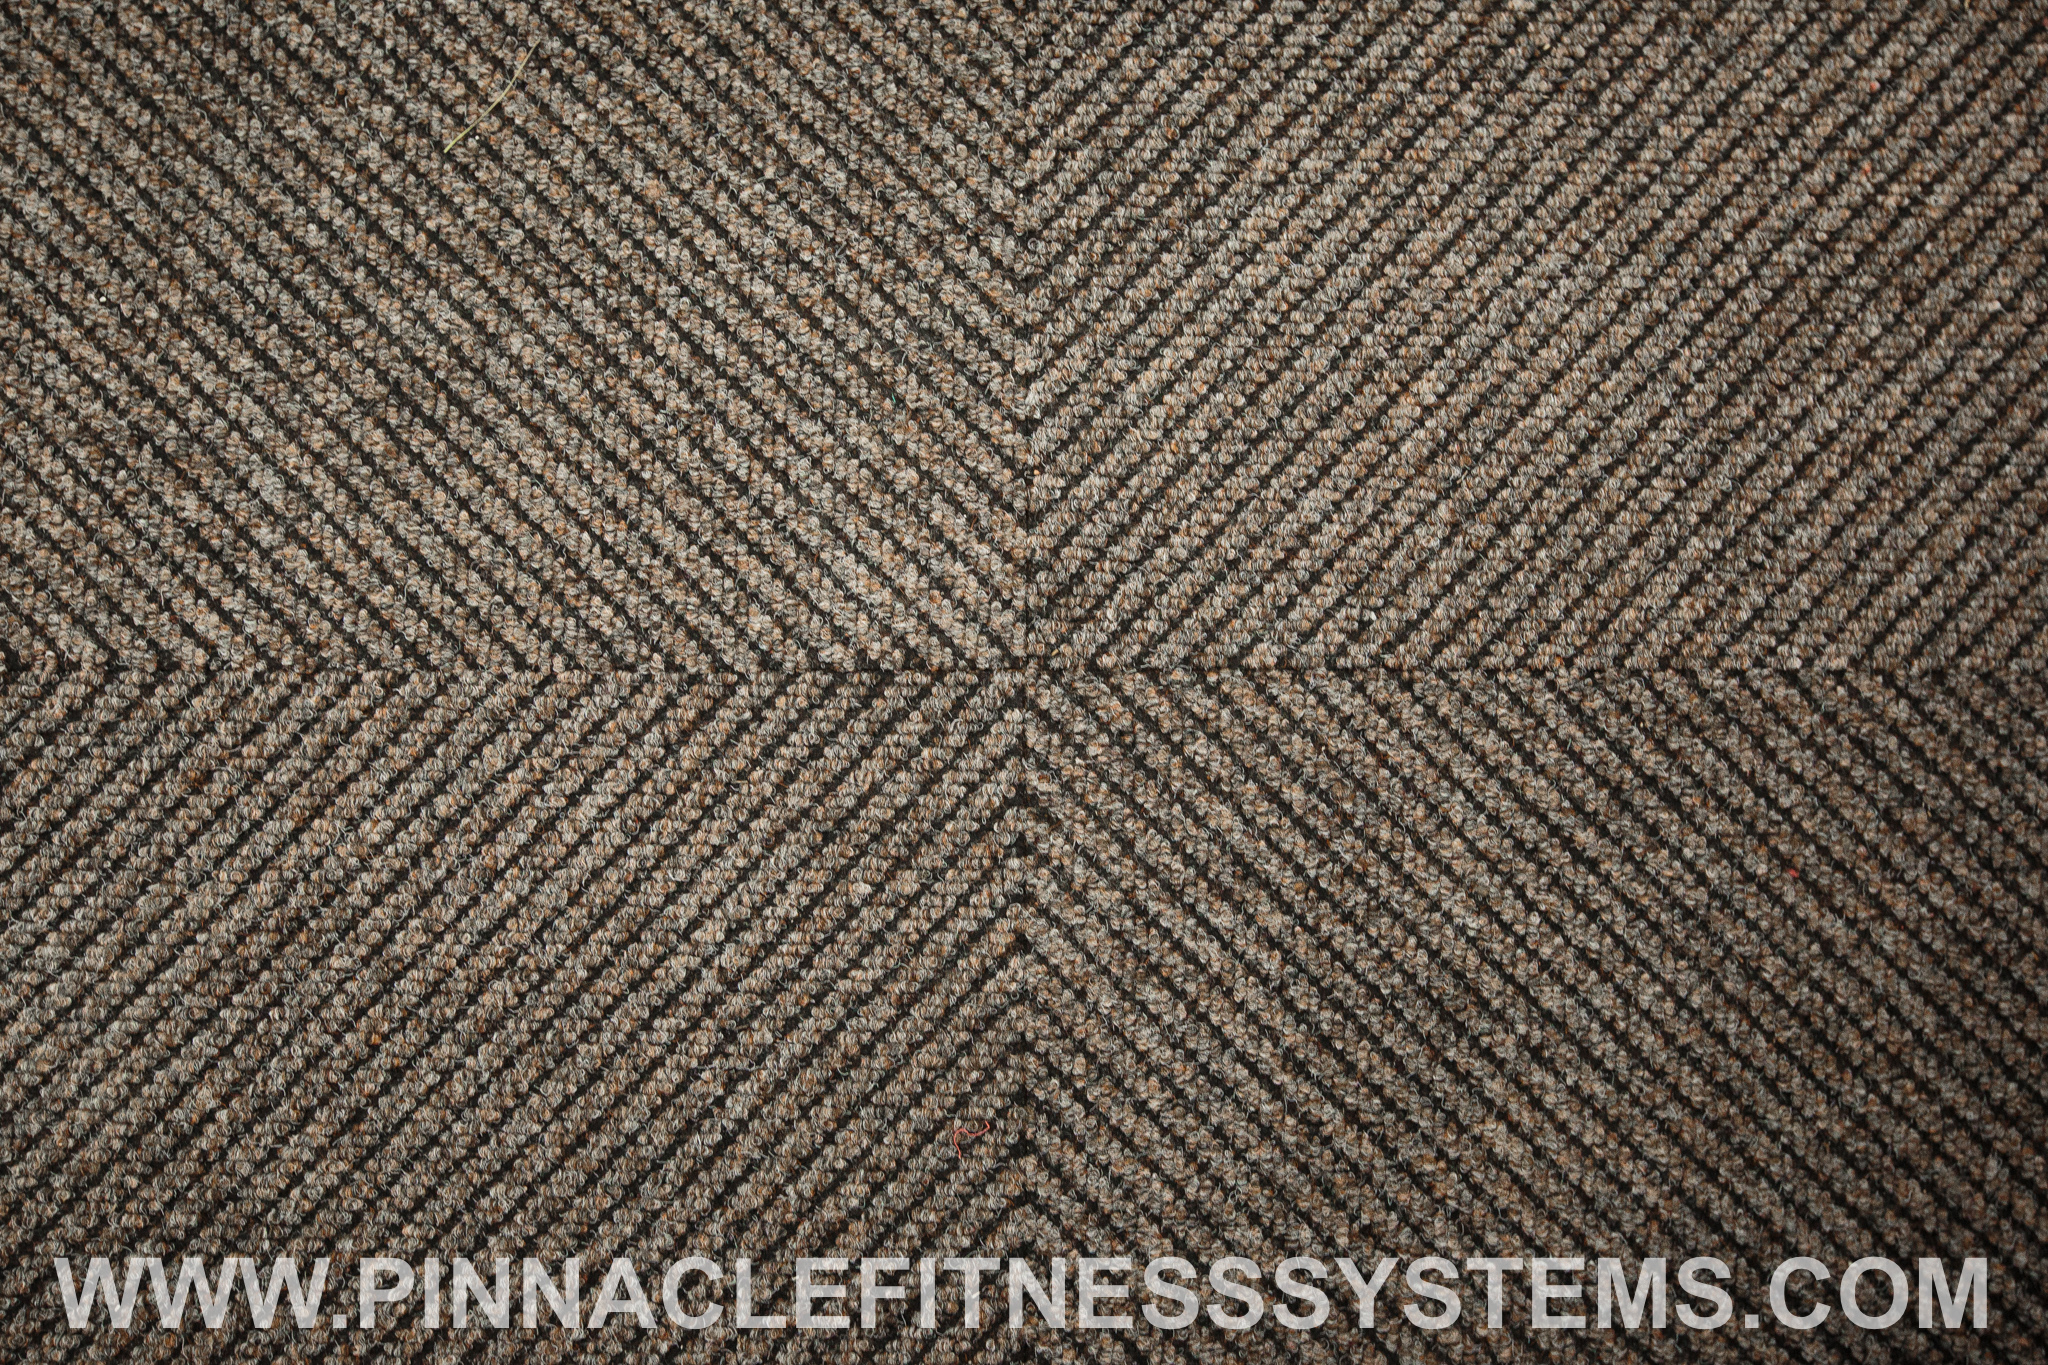 PFS-Sport-Weave-Fitness-Flooring-4.jpg